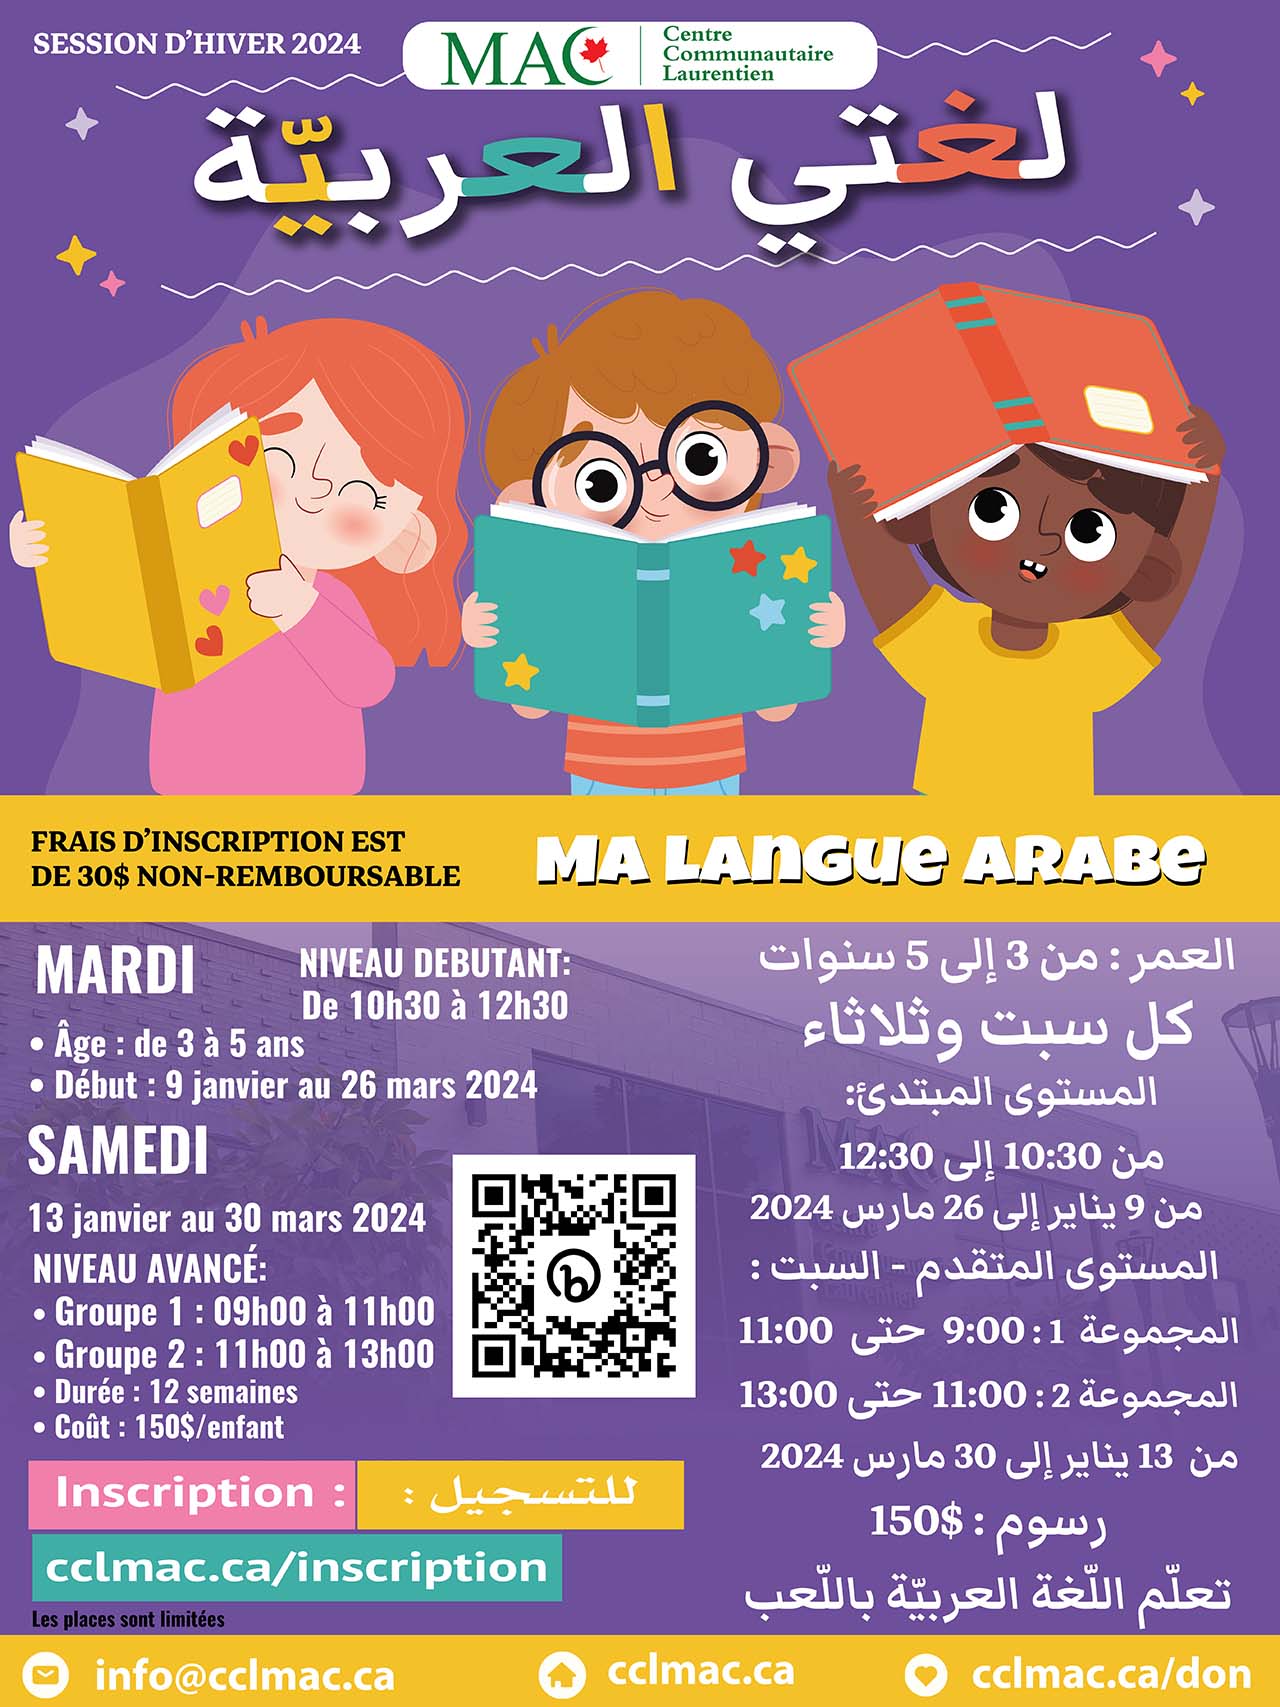 Apprendre la langue arabe tout en s'amusant - Session d’hiver 2024